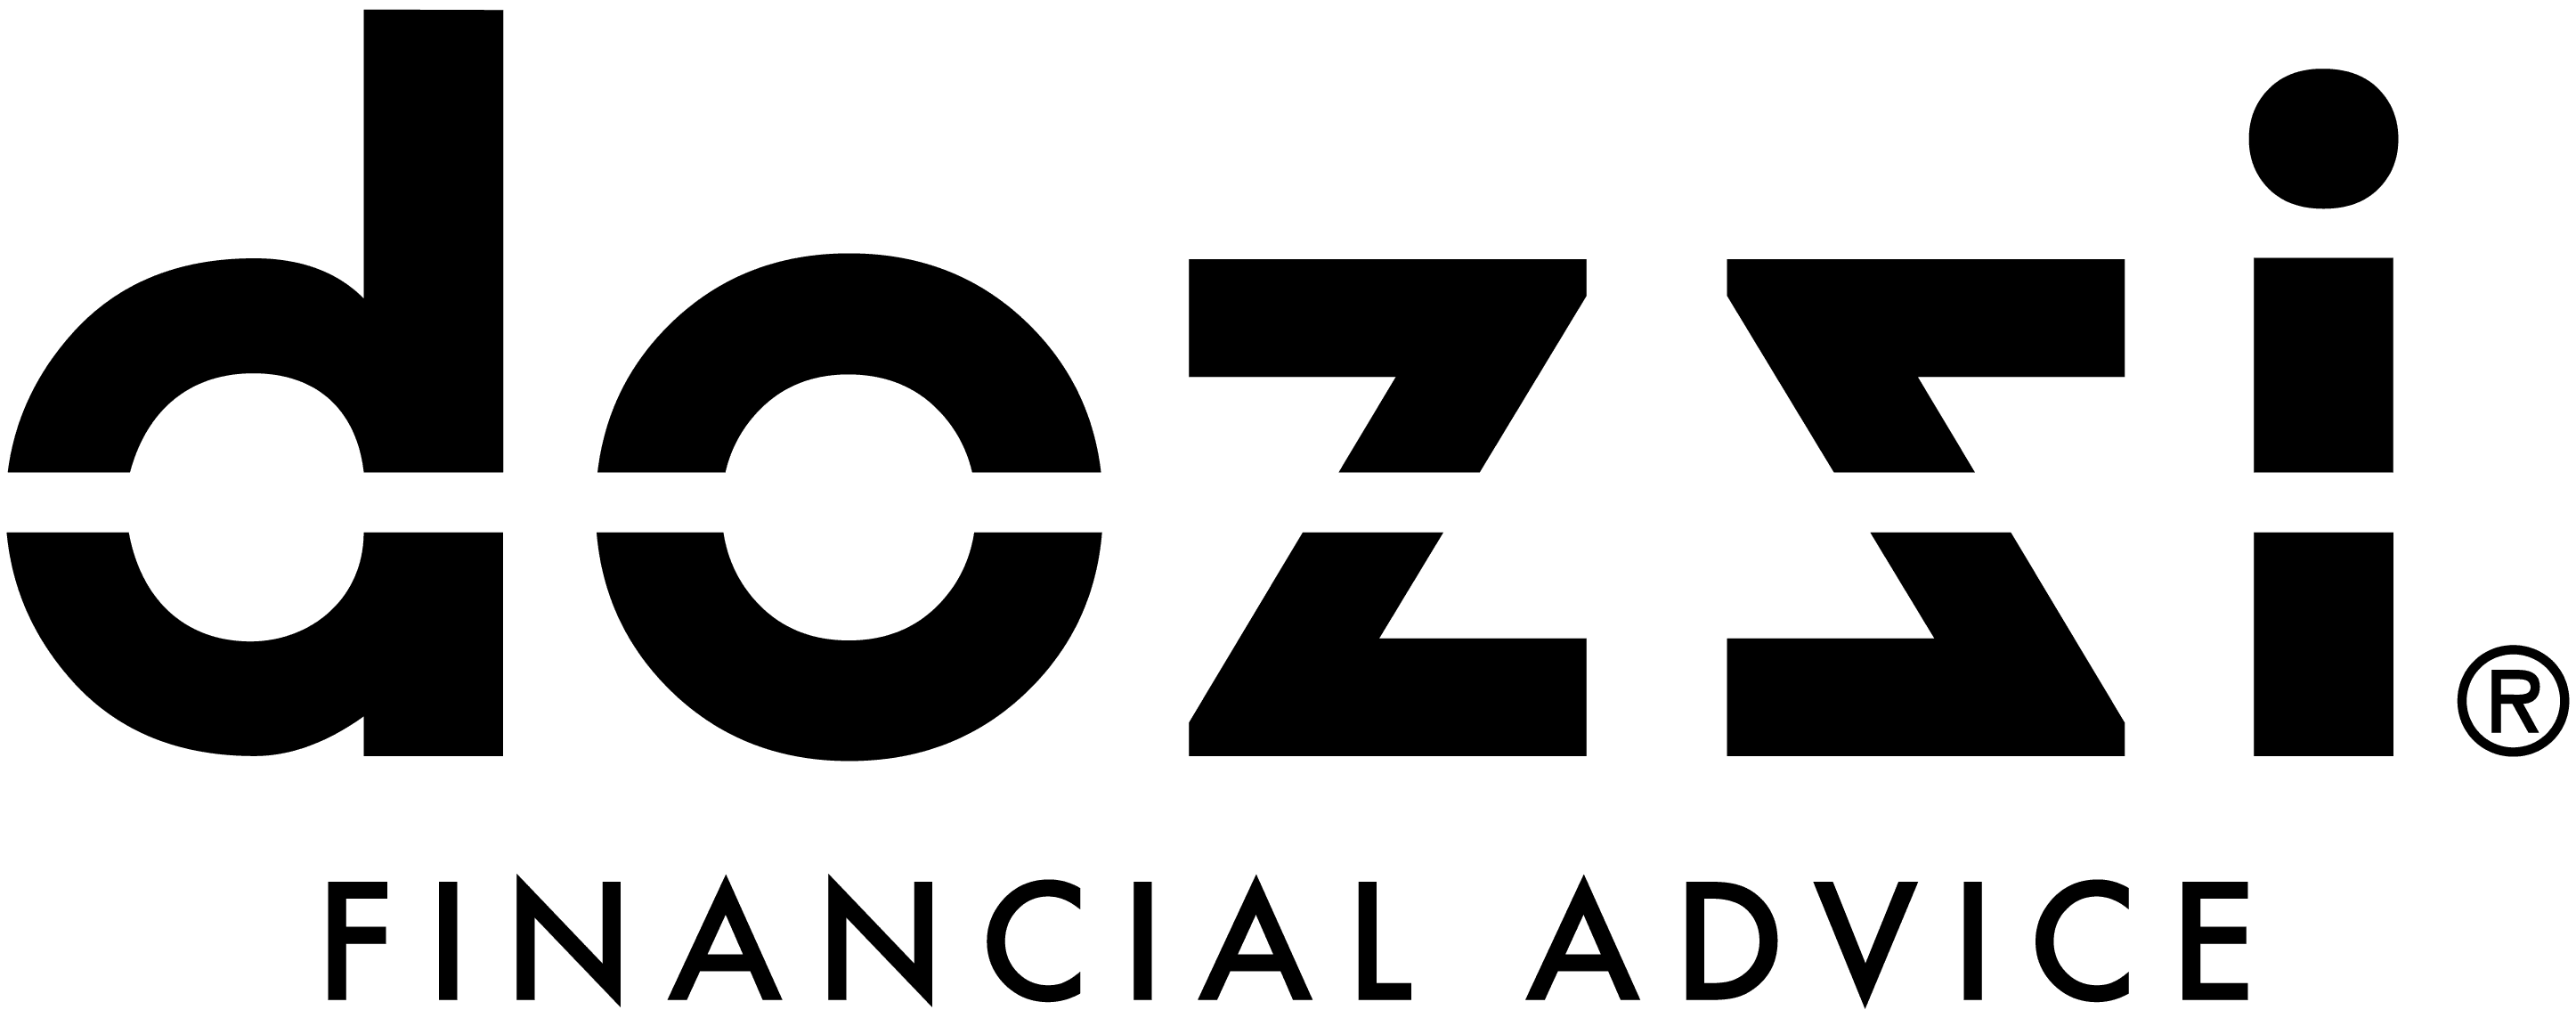 dozzi financial advice logo Customer Frame